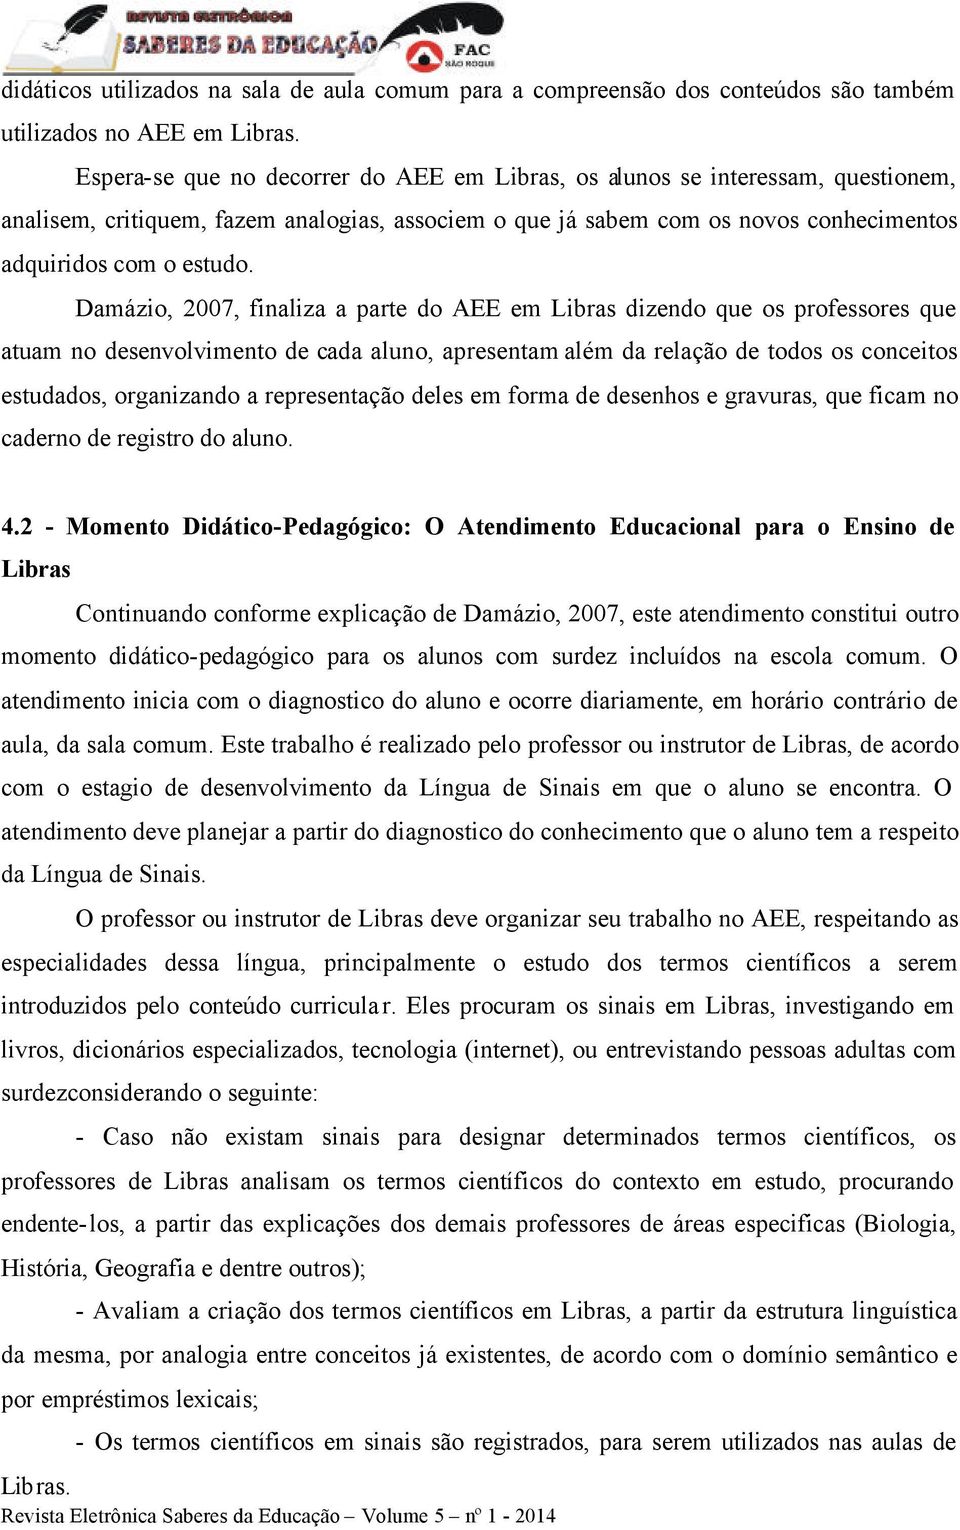 Damázio, 2007, finaliza a parte do AEE em Libras dizendo que os professores que atuam no desenvolvimento de cada aluno, apresentam além da relação de todos os conceitos estudados, organizando a